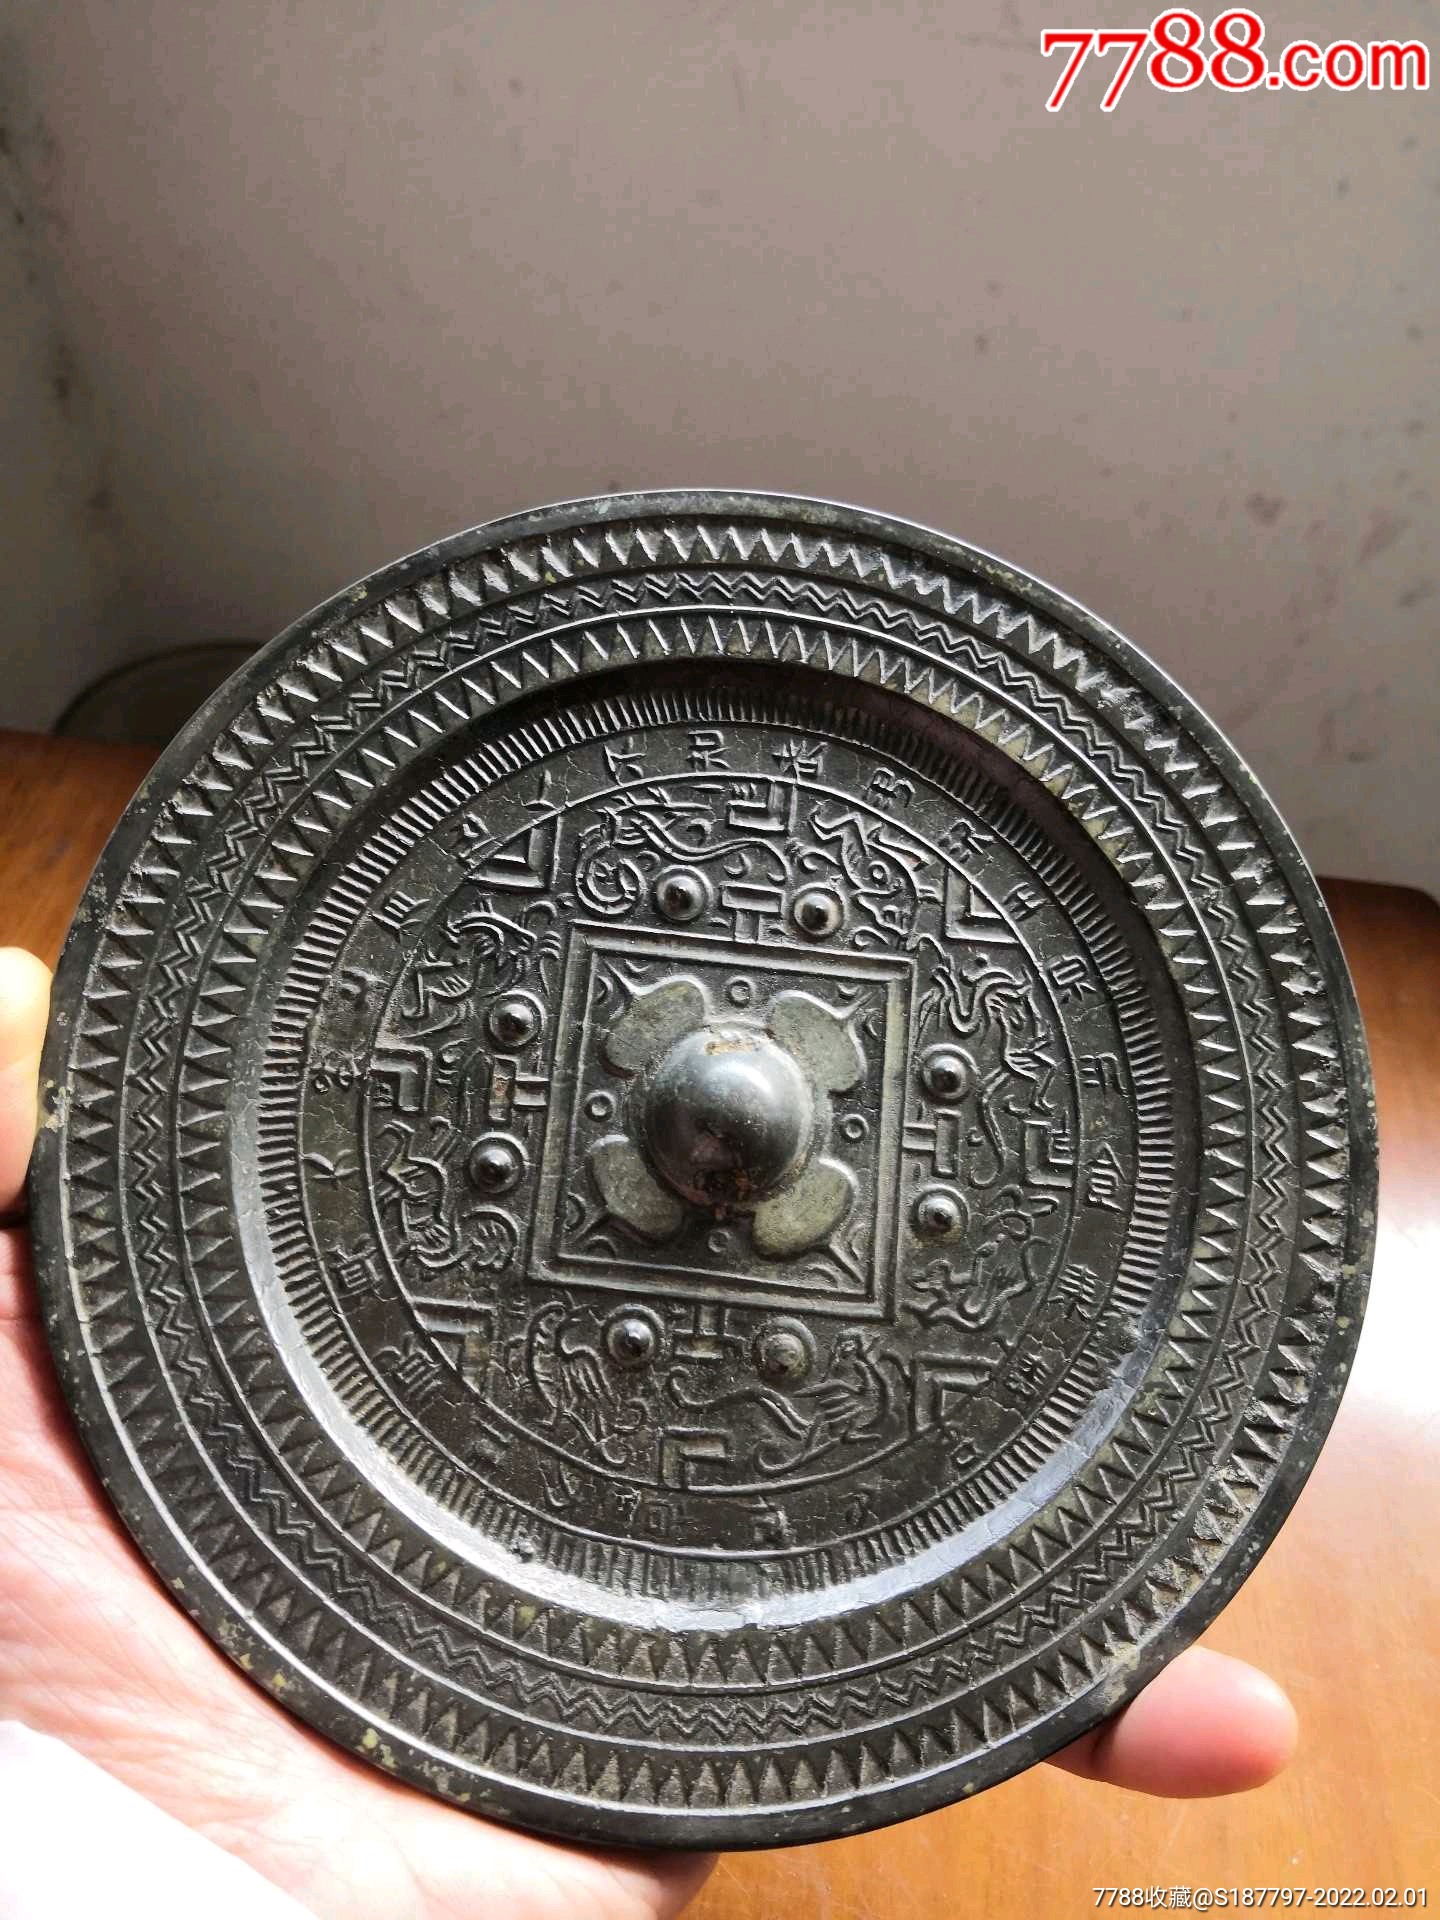 汉代铜镜多少钱图片